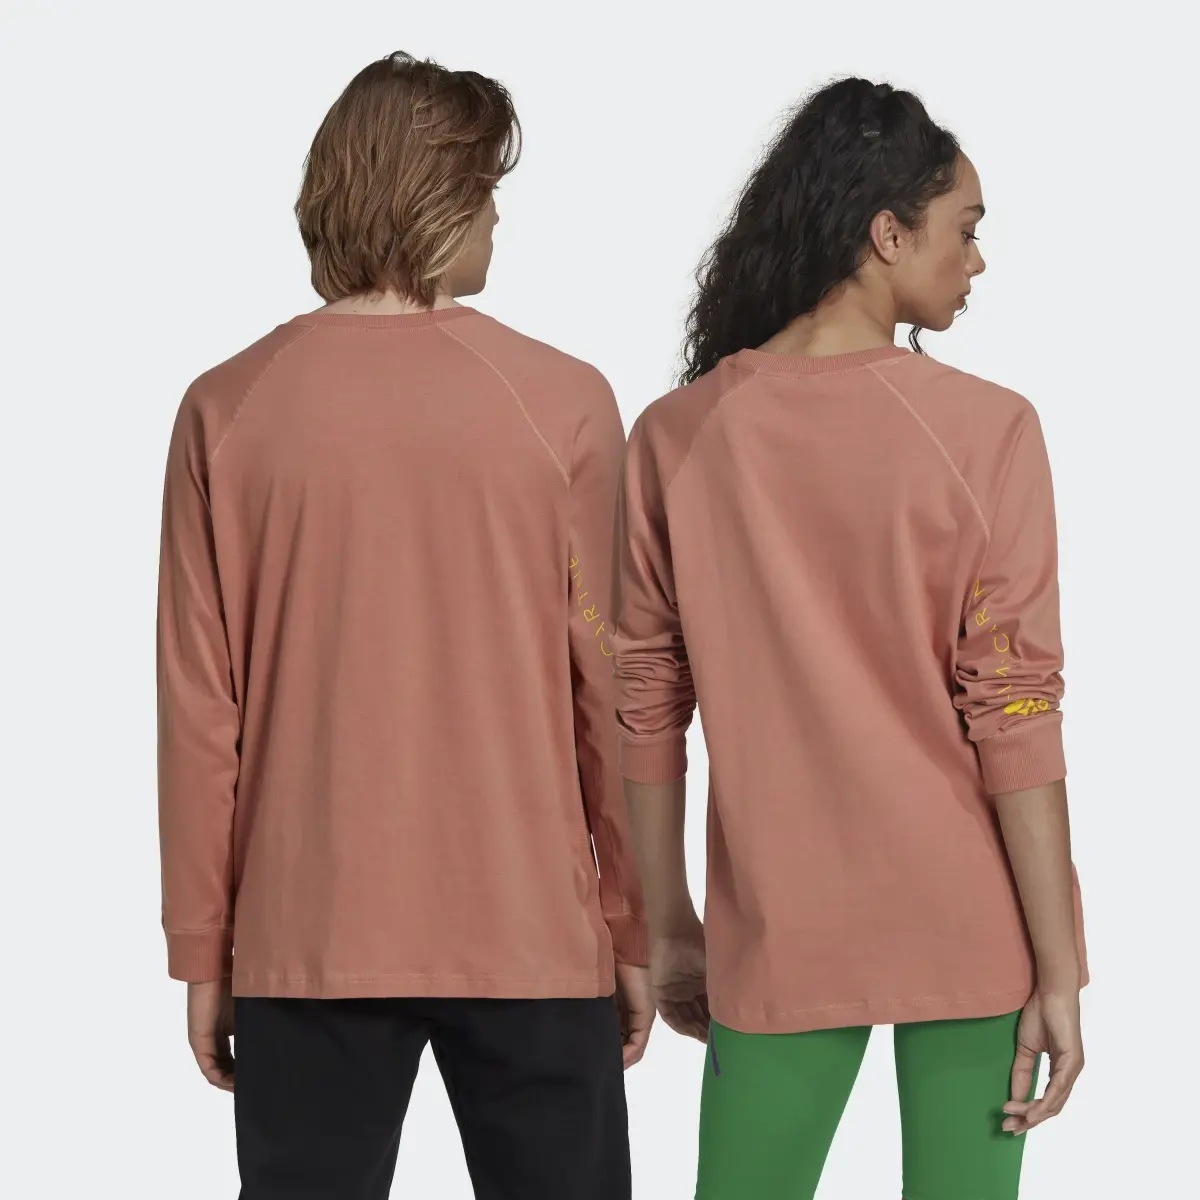 Adidas by Stella McCartney Long Sleeve Long-Sleeve Top (Gender Neutral). 3